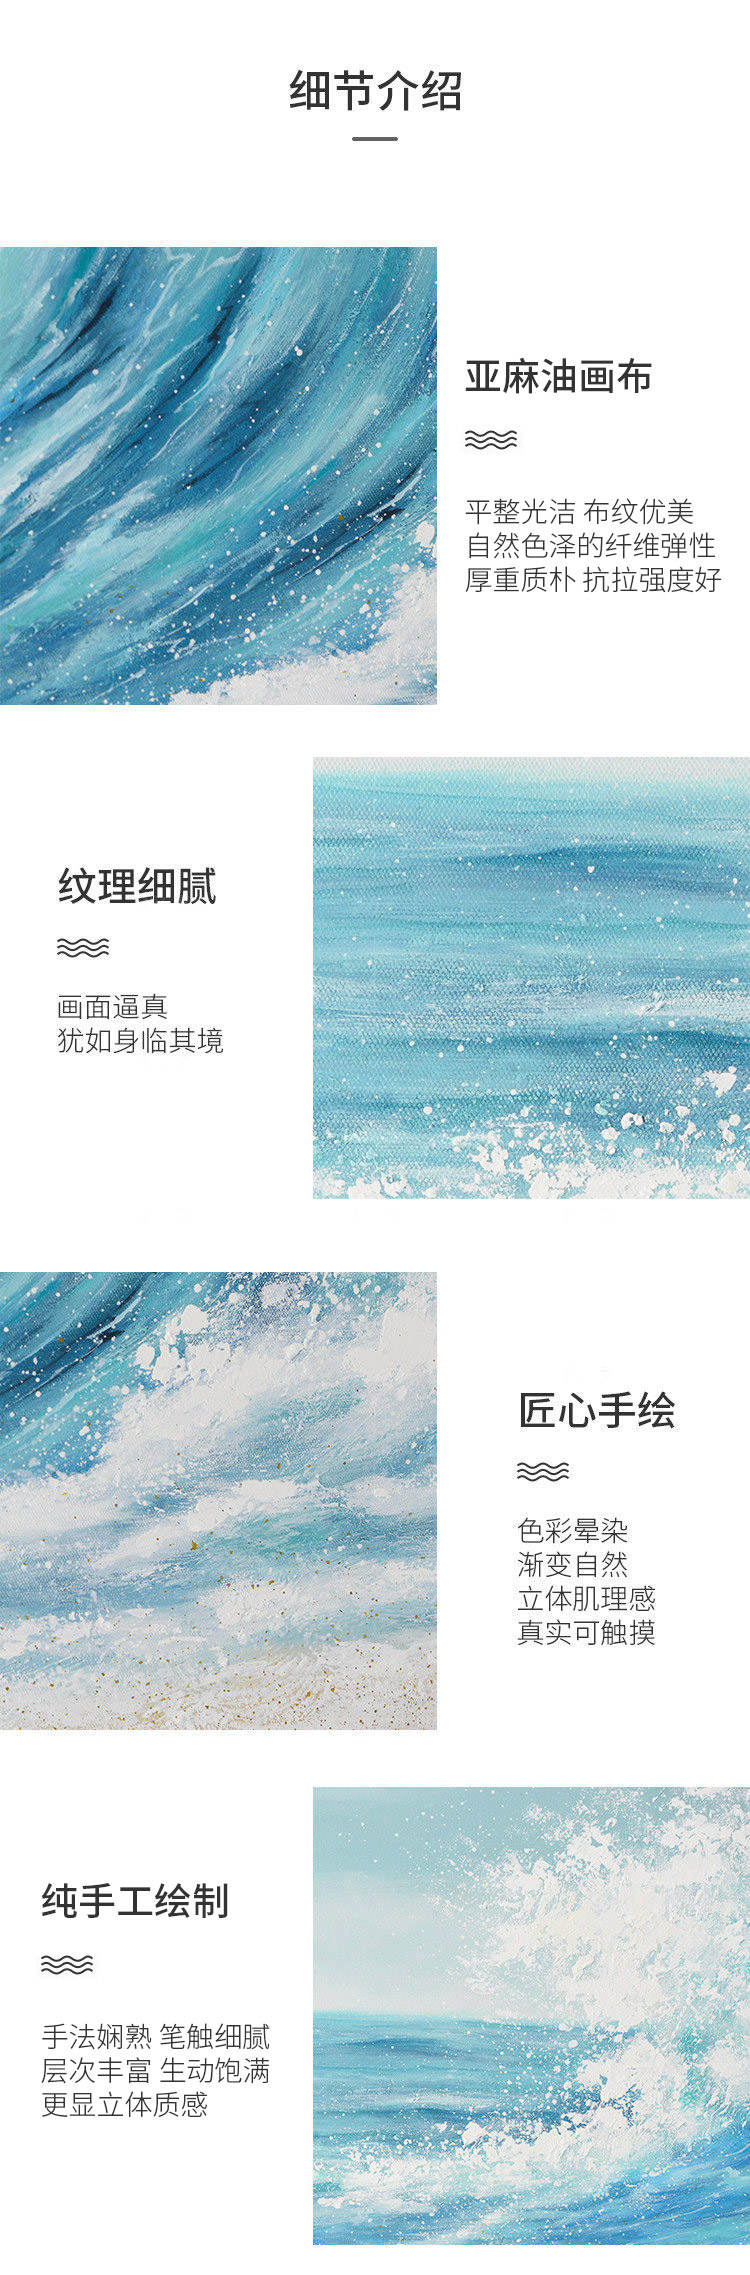 绘美映画系列蓝色海浪 手绘挂画的详细介绍